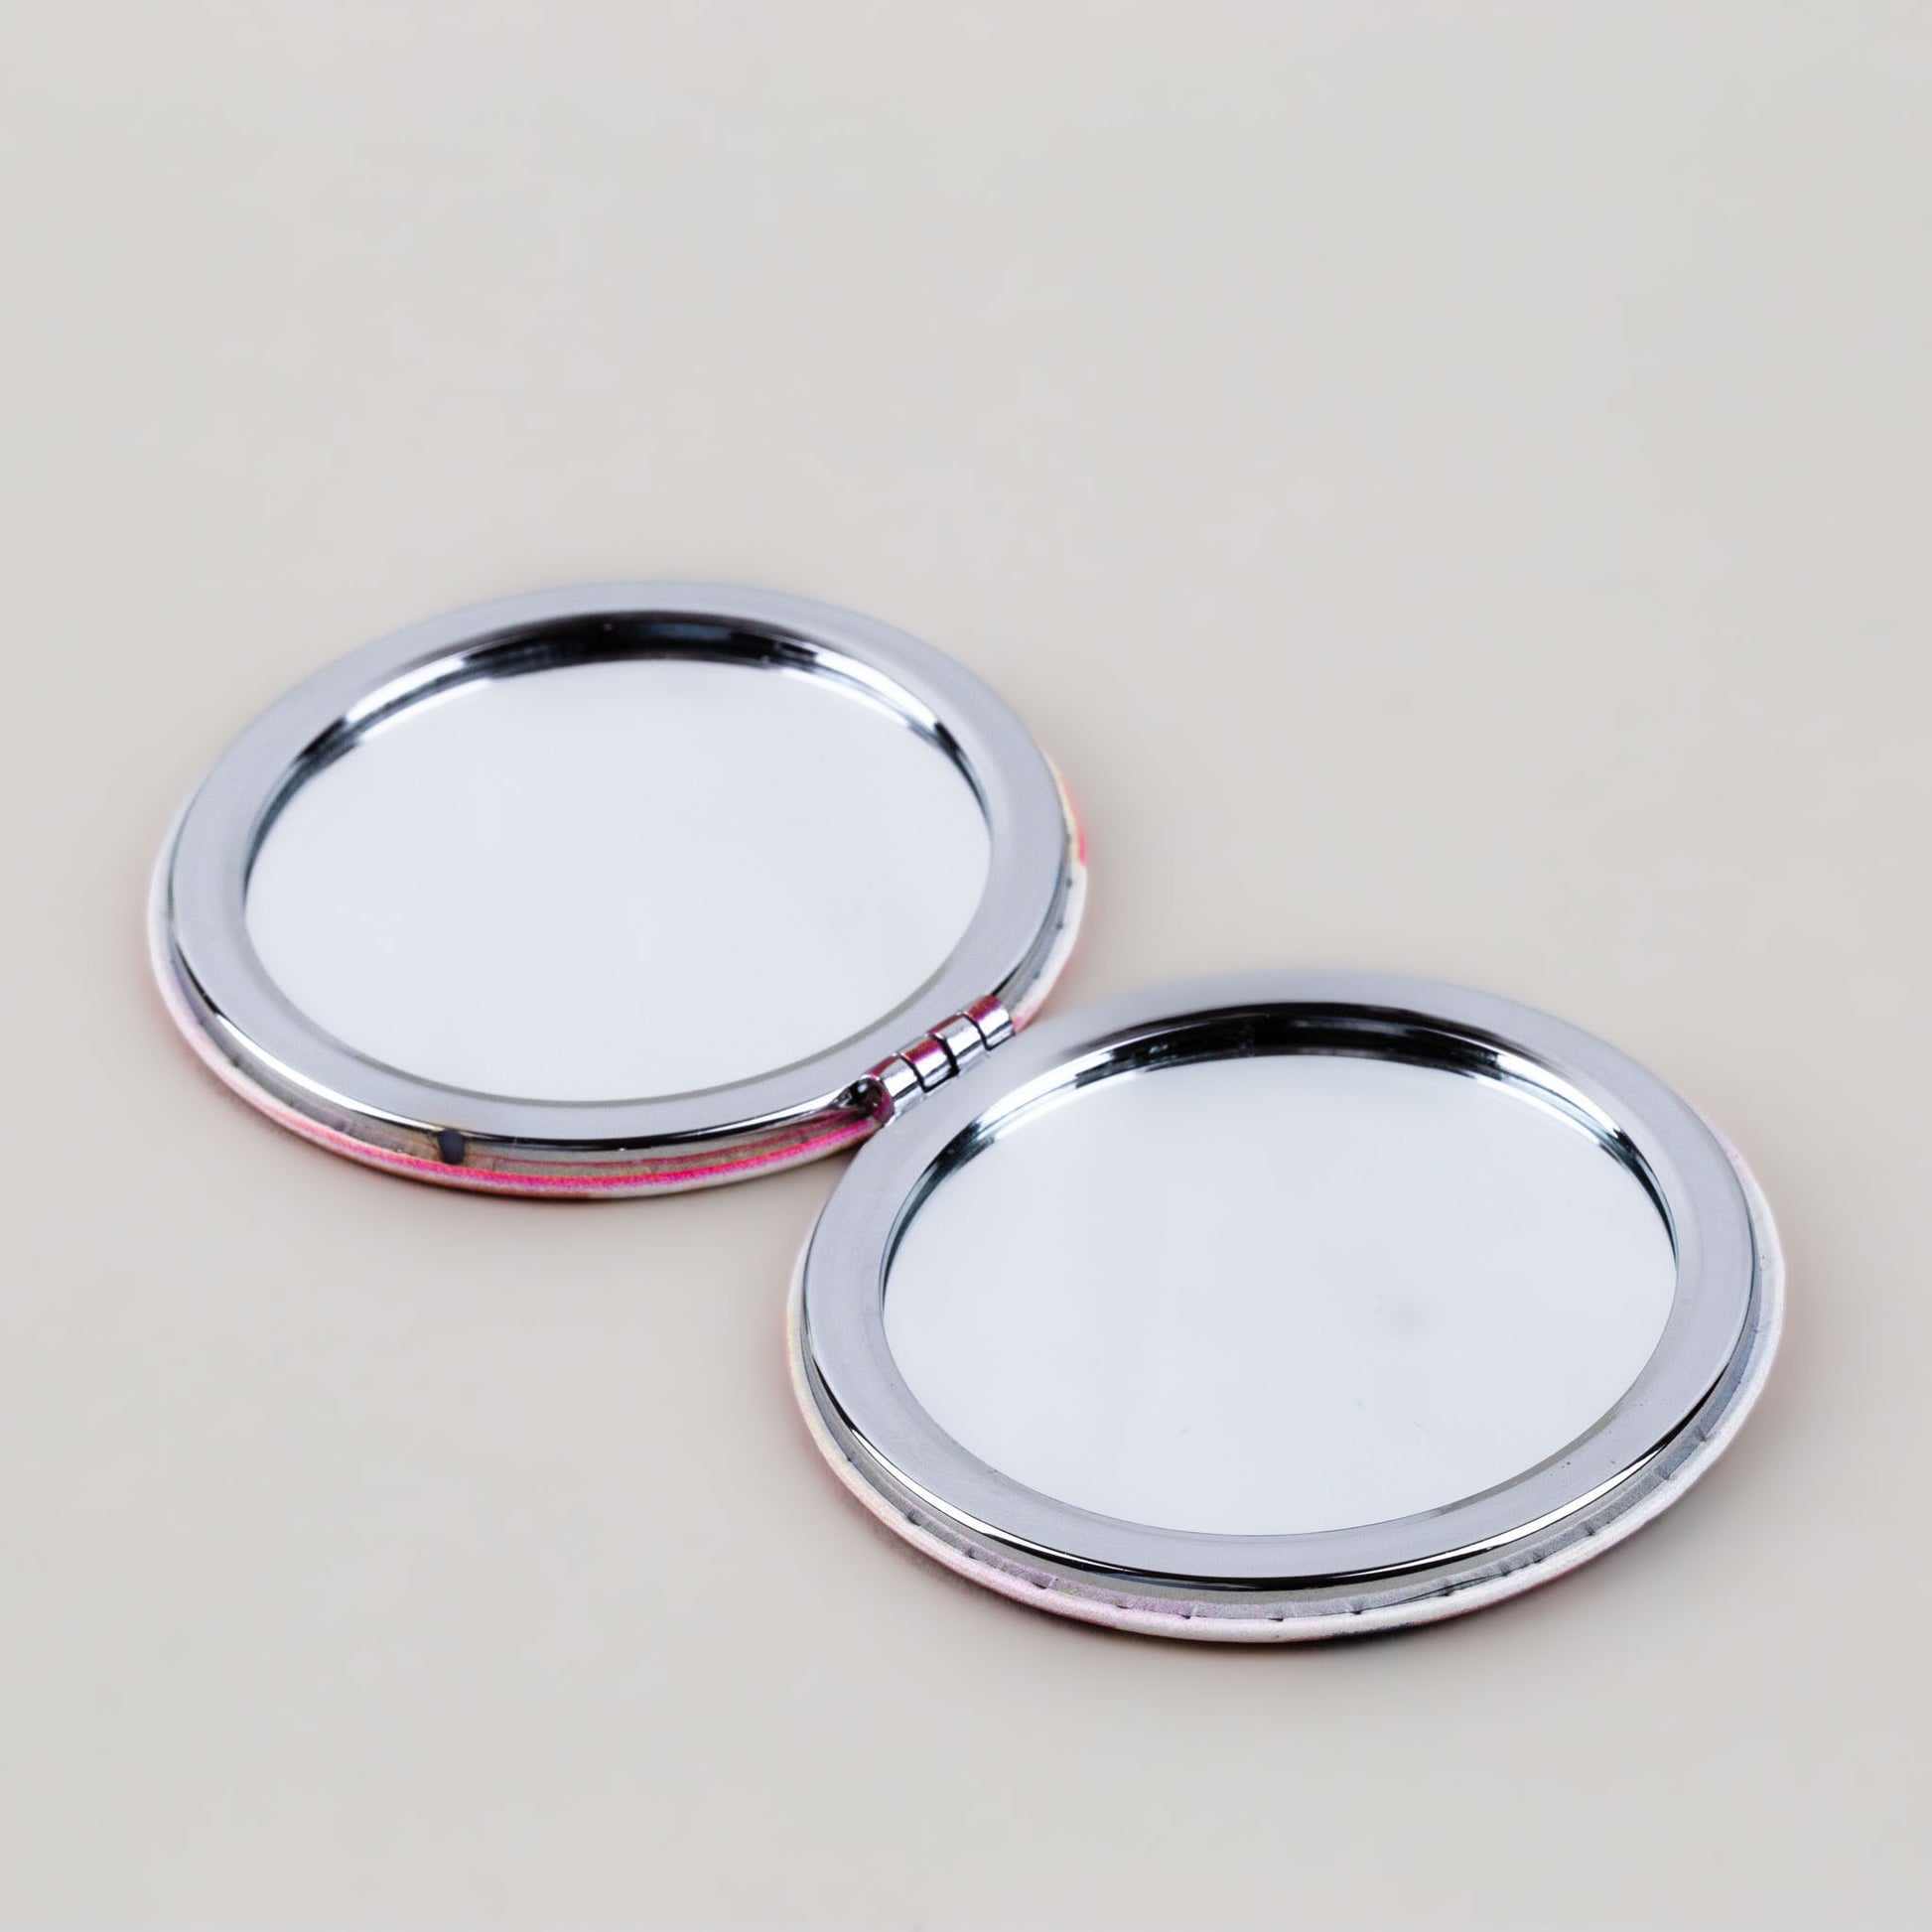 Oglindă de poșetă, formă rotundă cu 2 părți, model Seasons - Summer